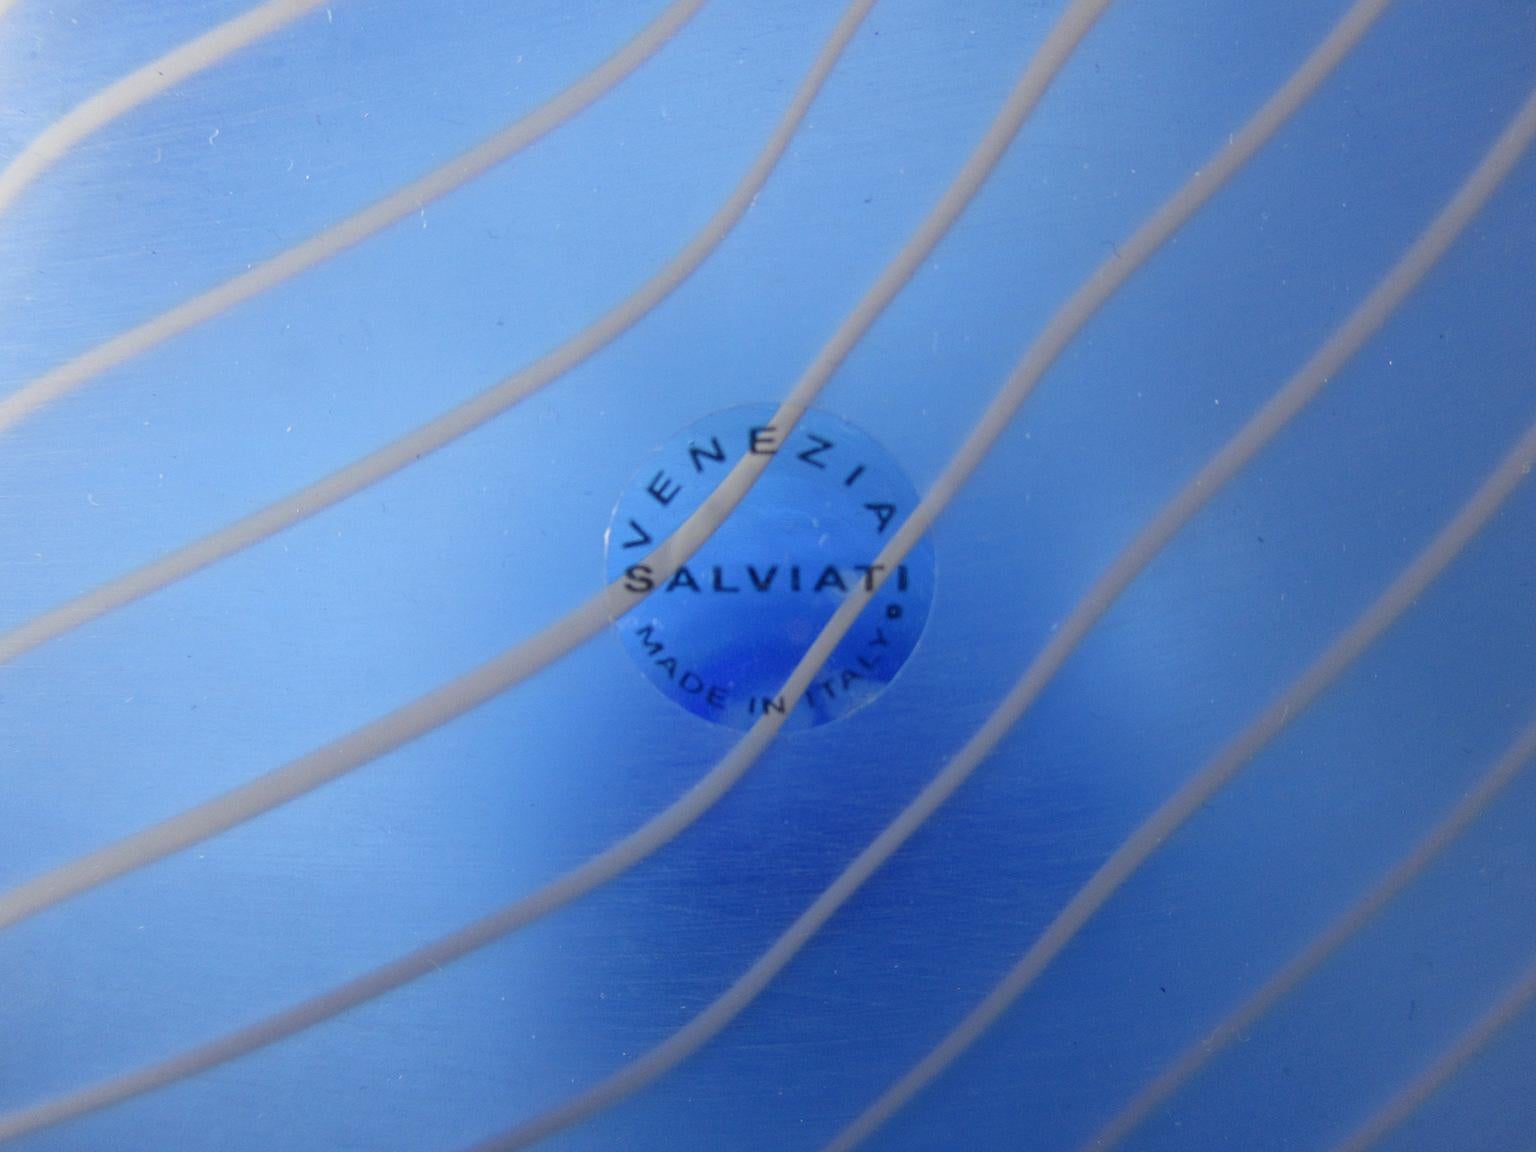 Late 20th Century Rare and Monumental Italian Glass Vessel by Salviati & C. for Studio Dillon